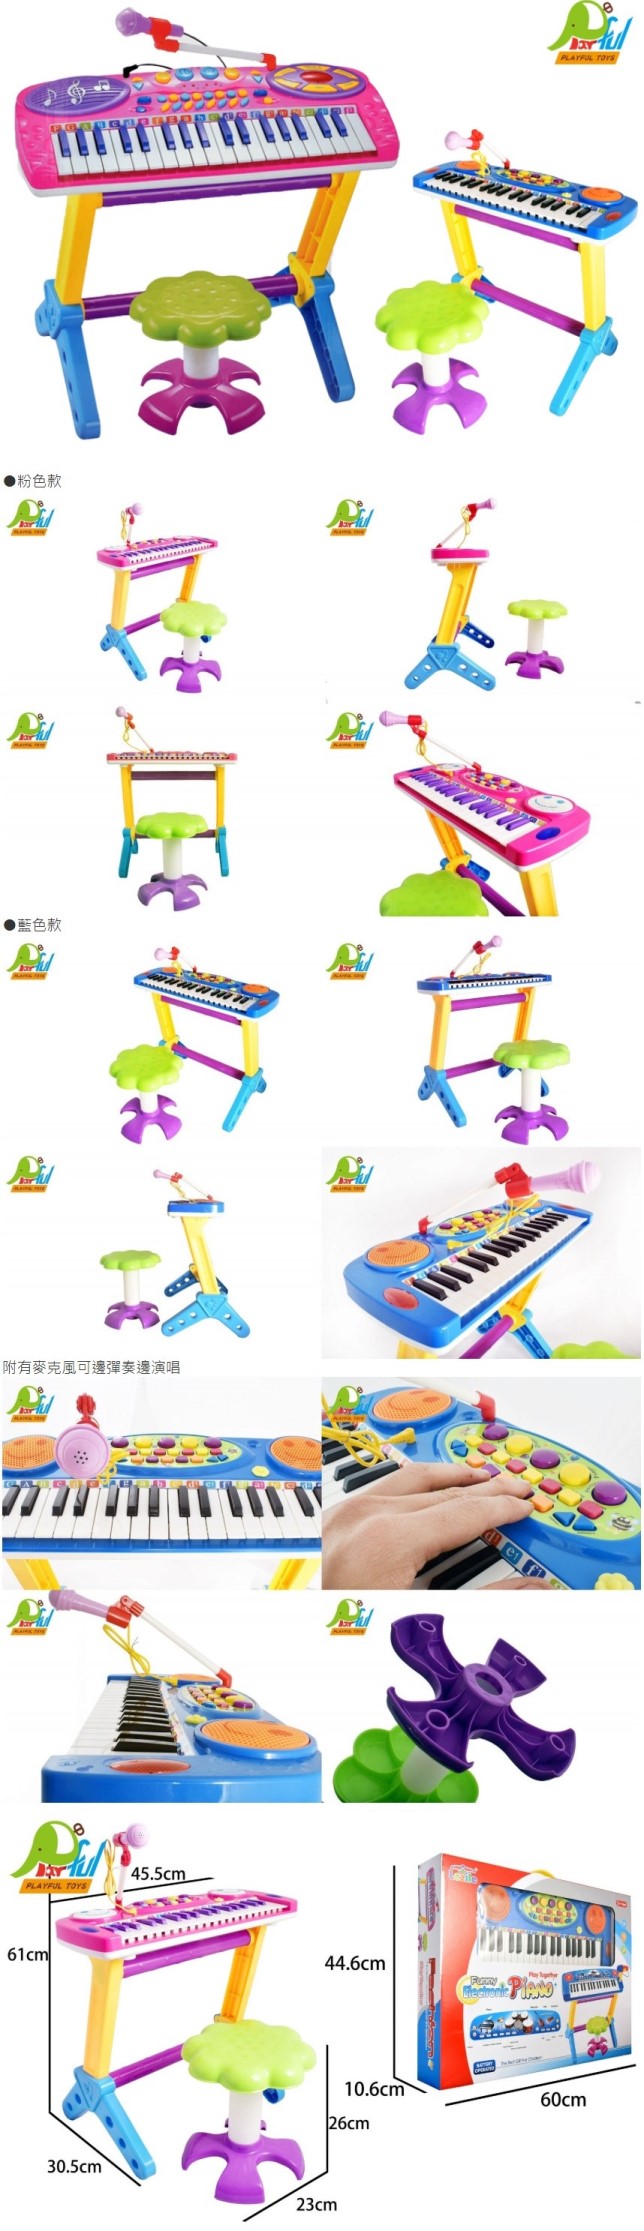 Playful Toys 頑玩具 37鍵電子琴+麥克風